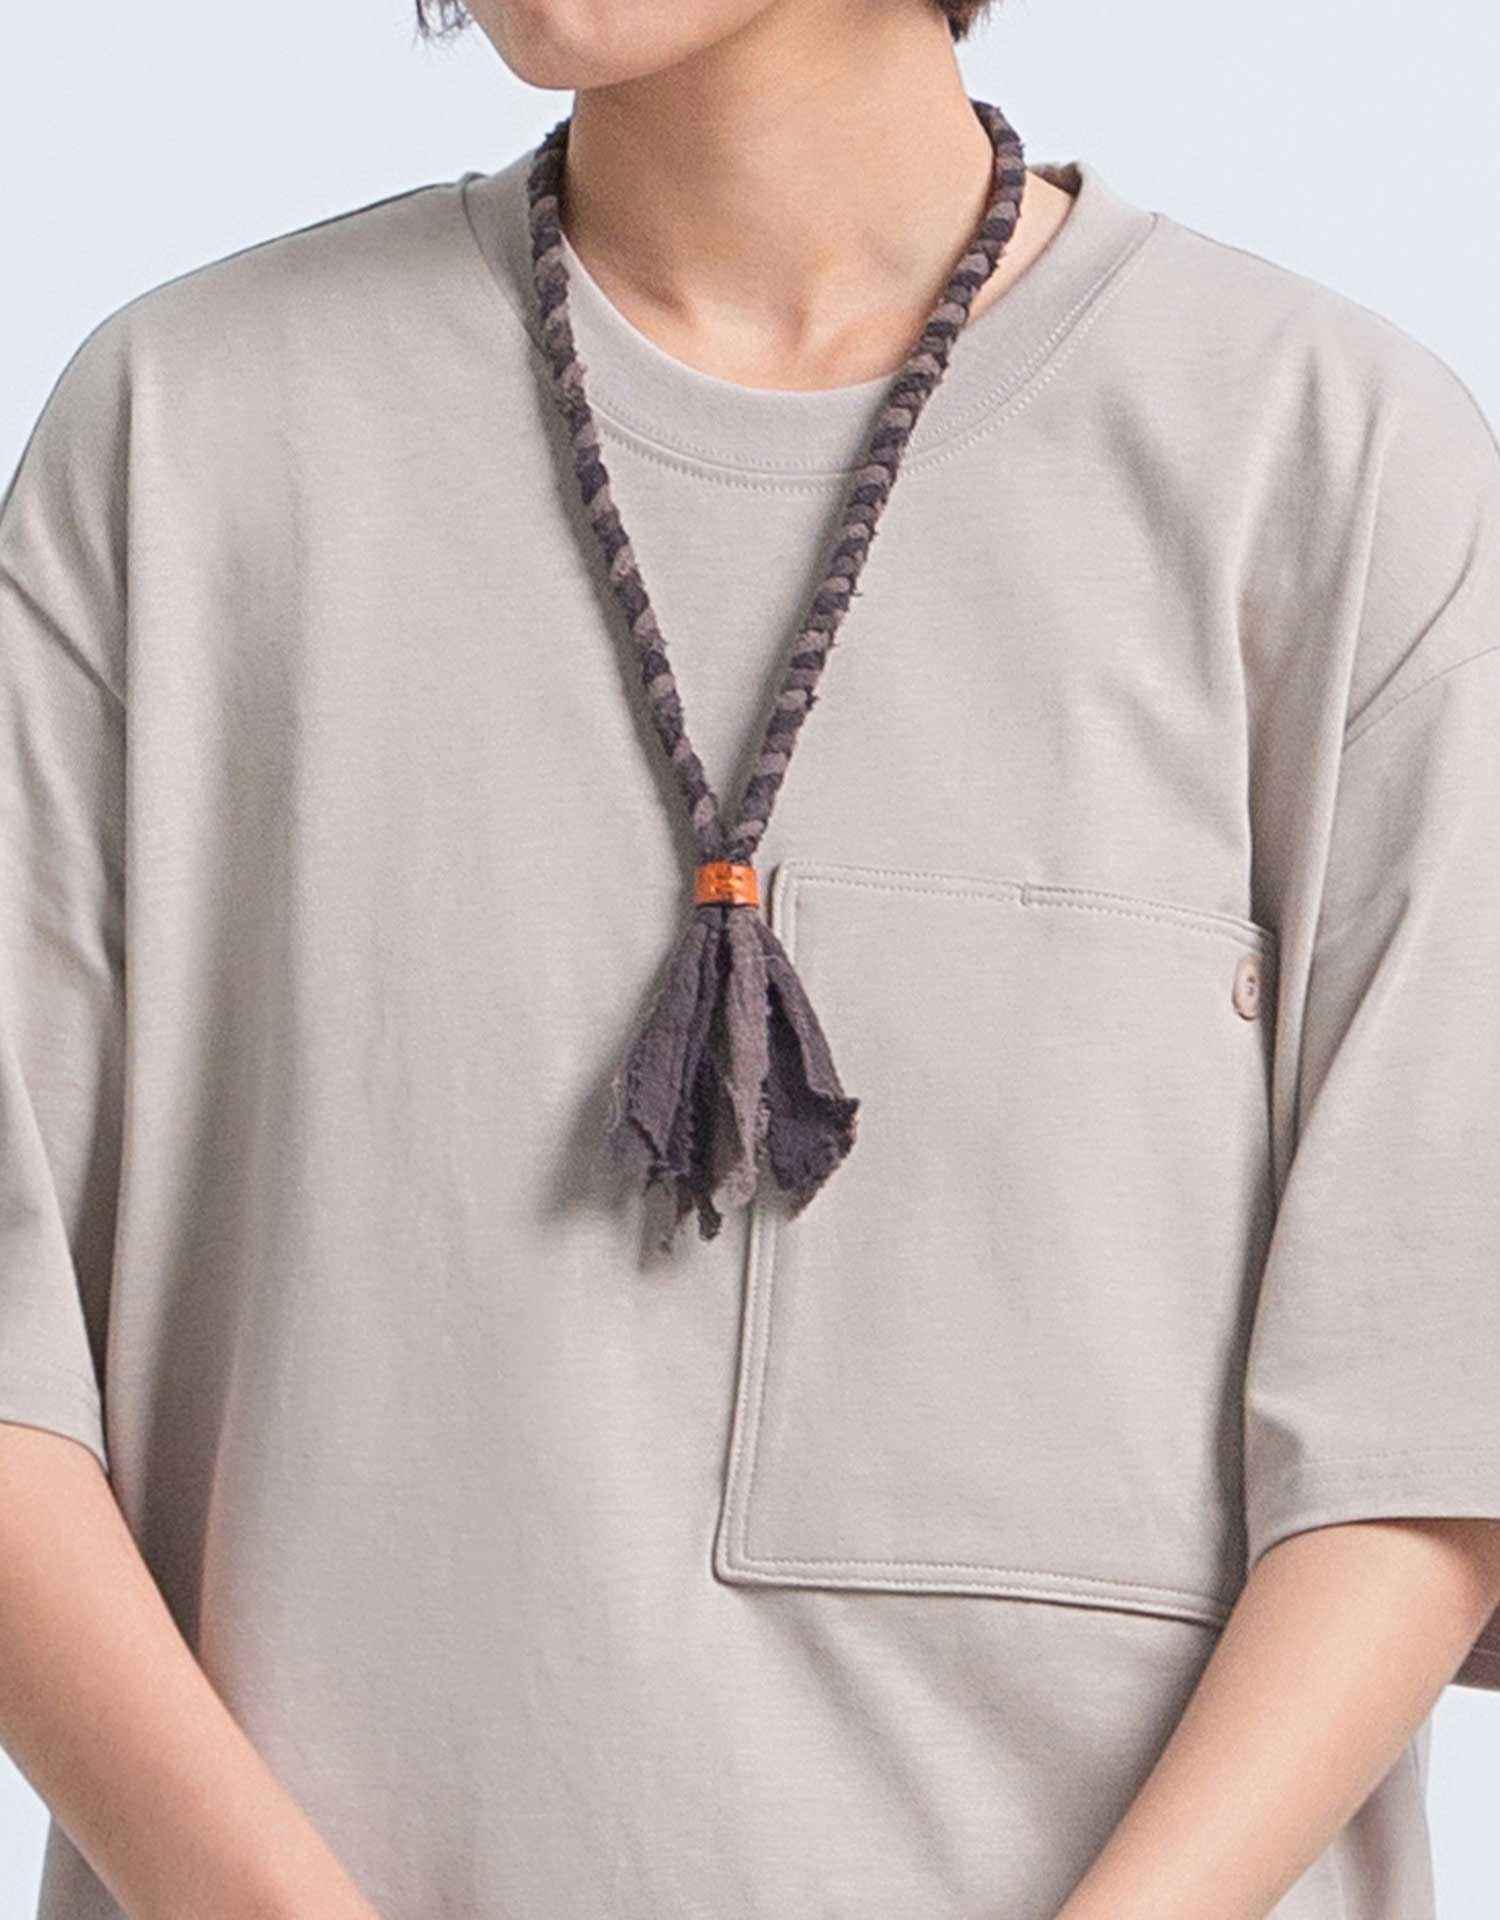 NamSan Handmade Batik Braided Necklace